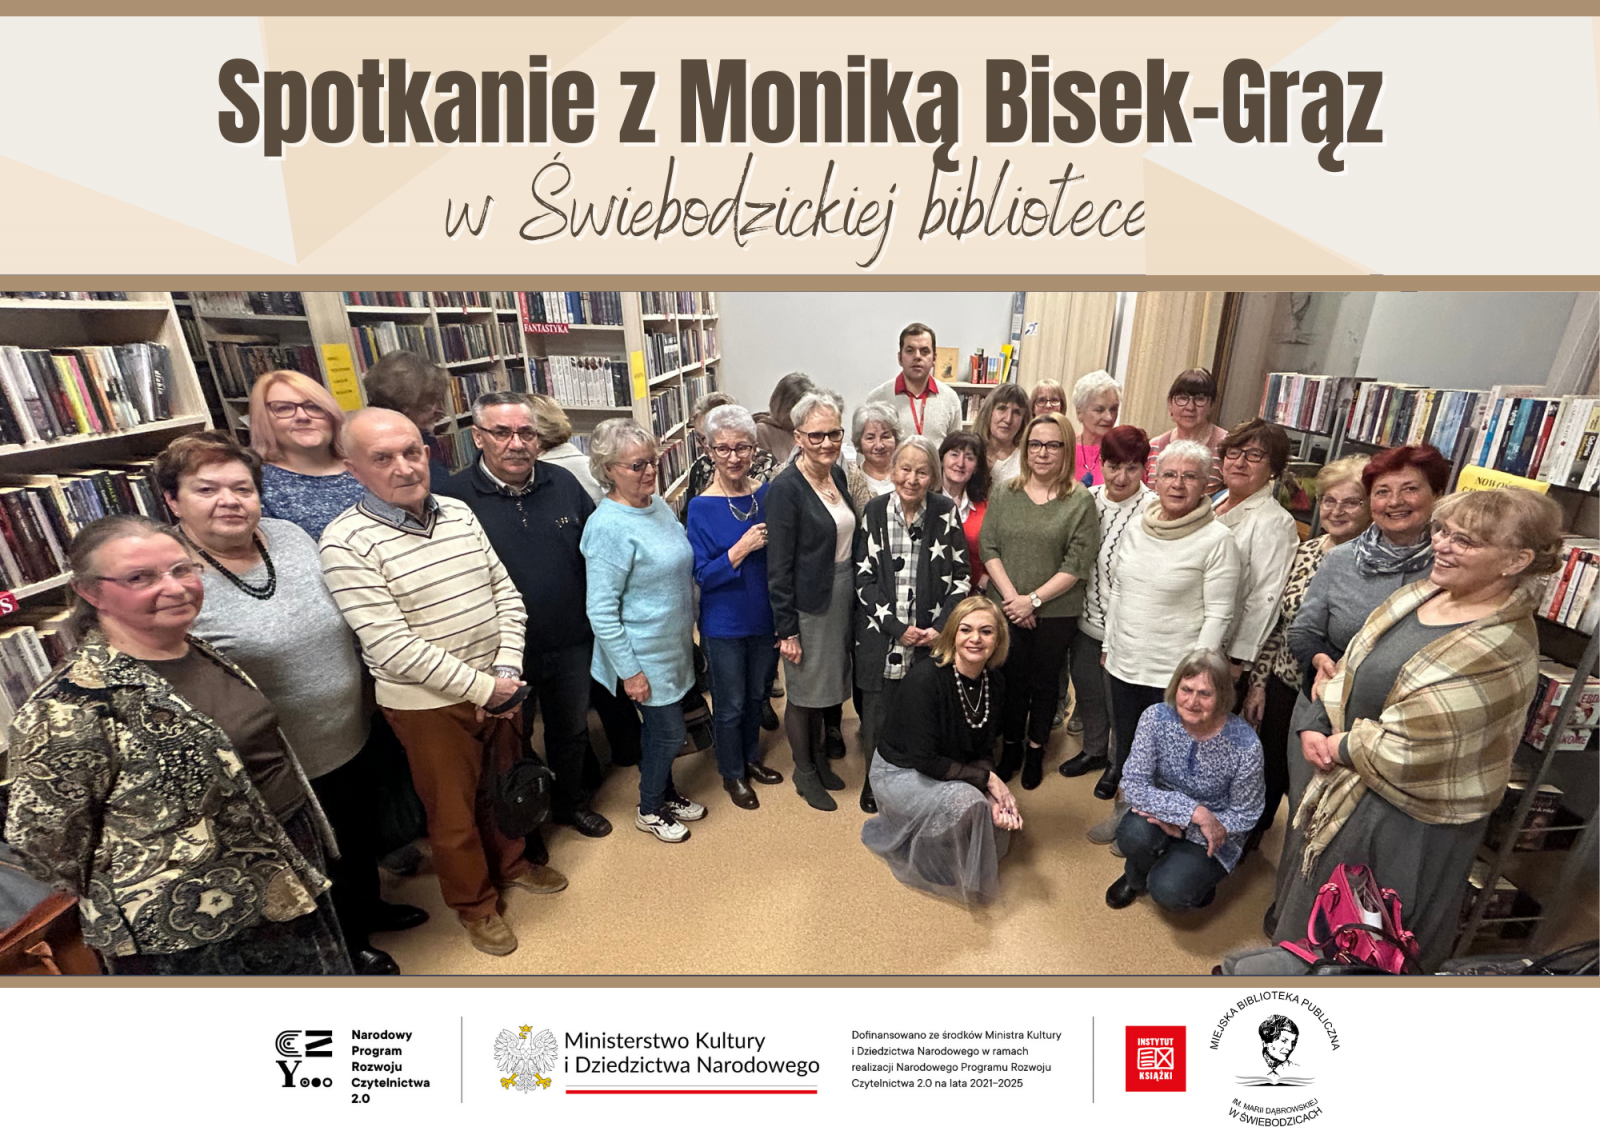 Spotkanie z Moniką Bisek-Grąz w Miejskiej Bibliotece Publicznej w Świebodzicach.